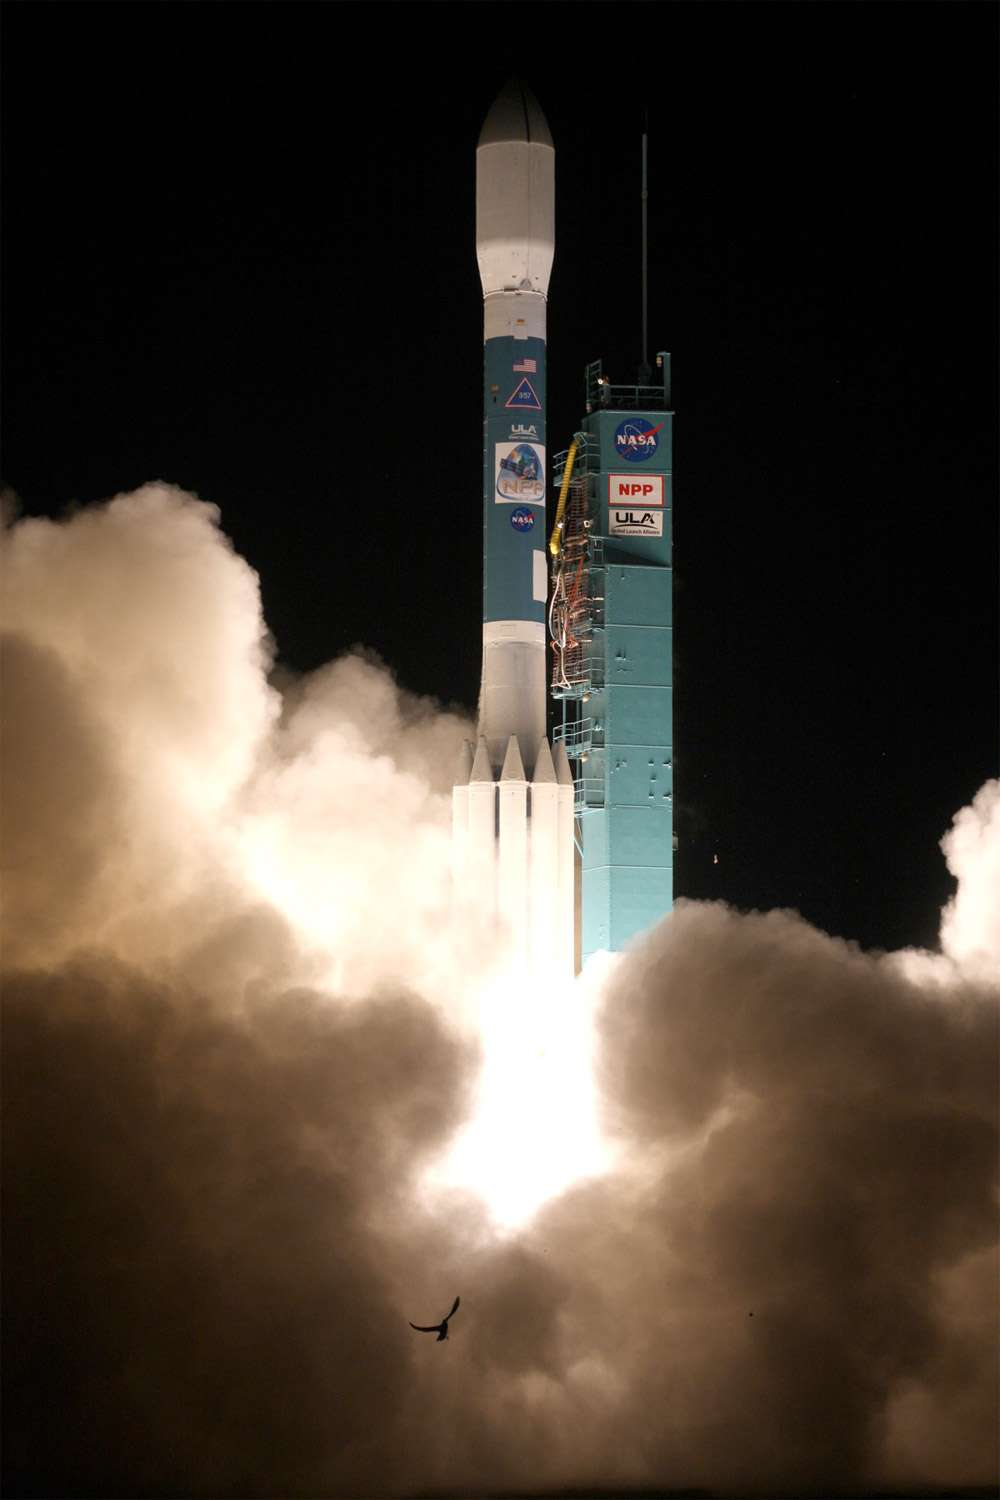 Les satellites Smap et Oco-2 seront lancés par Delta II comme ce fut le cas pour Suomi NPP en octobre 2011, ici à l'image. © Ula